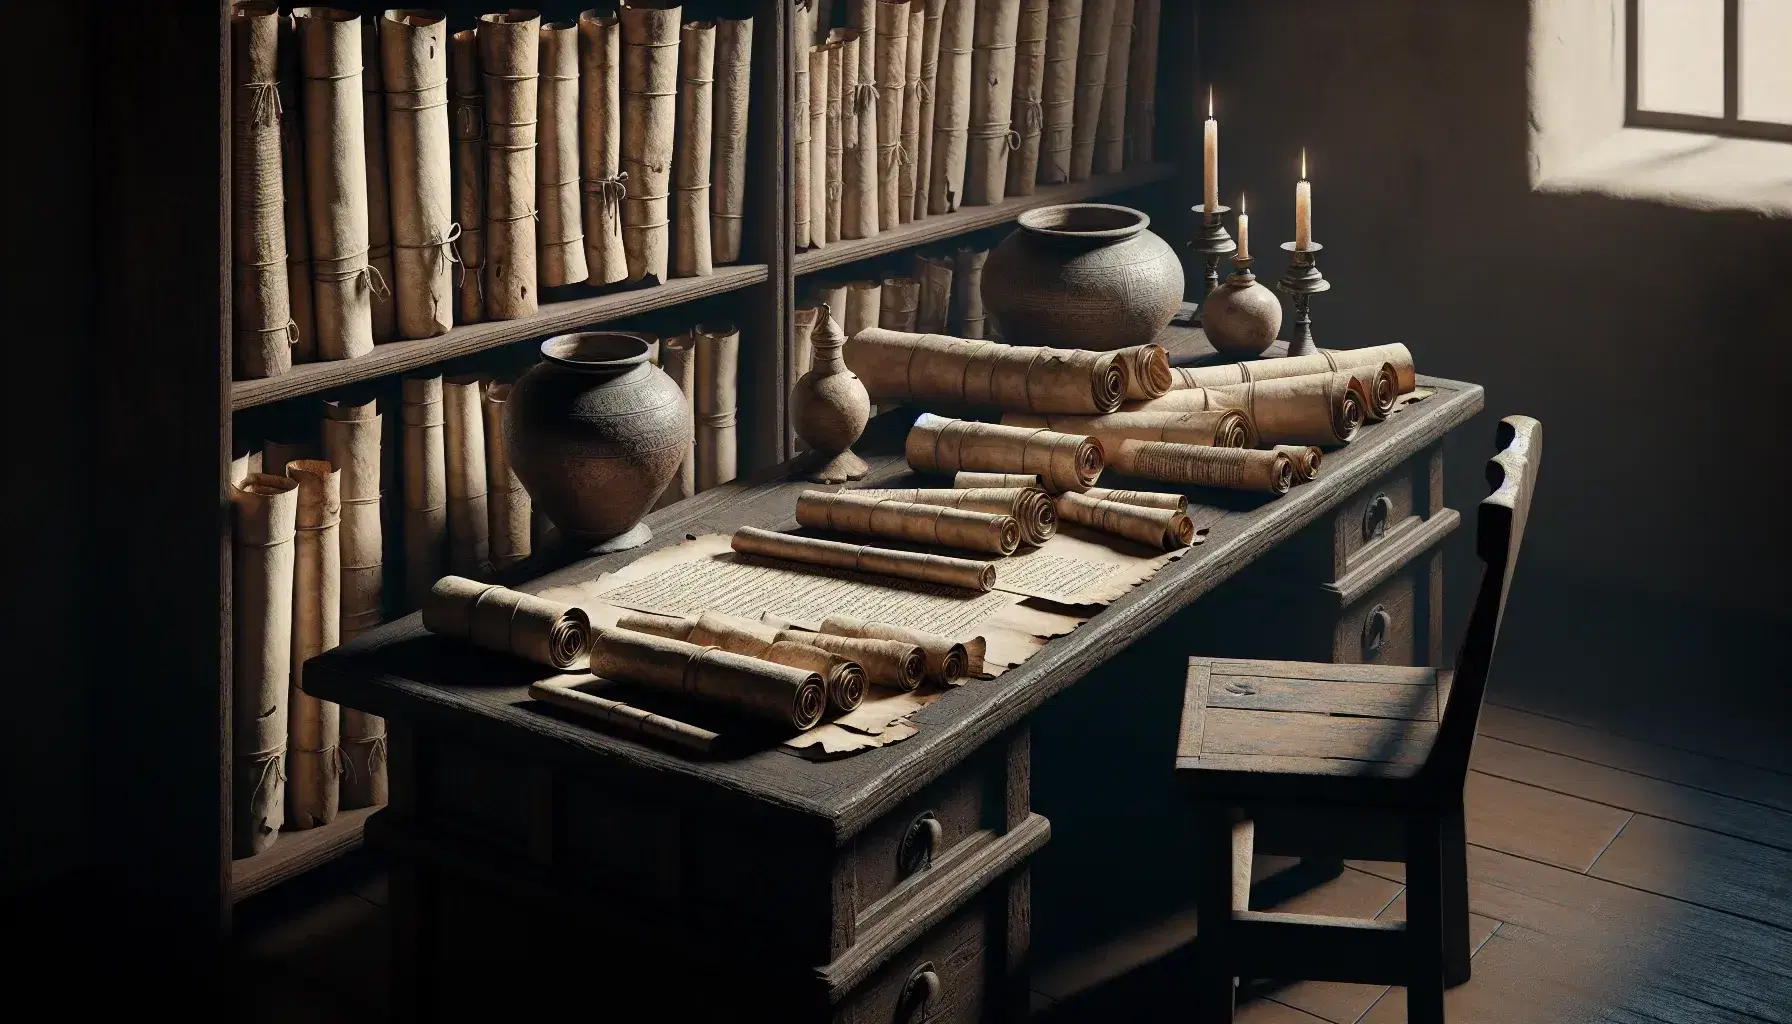 Escena antigua con mesa de madera oscura, pergaminos desenrollados, lámparas de aceite cerámicas y estantería con más rollos en fondo de piedra.